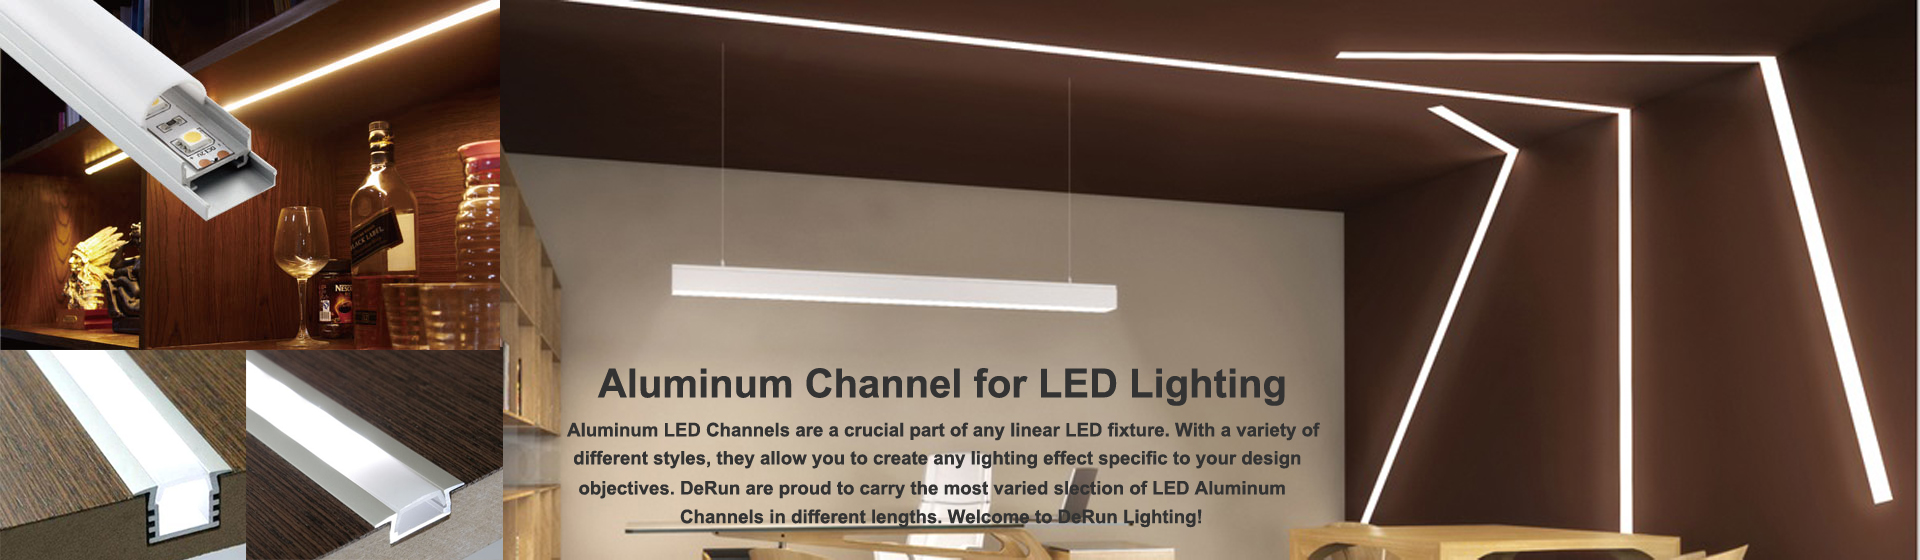 canale led in alluminio - Luci lineari a LED